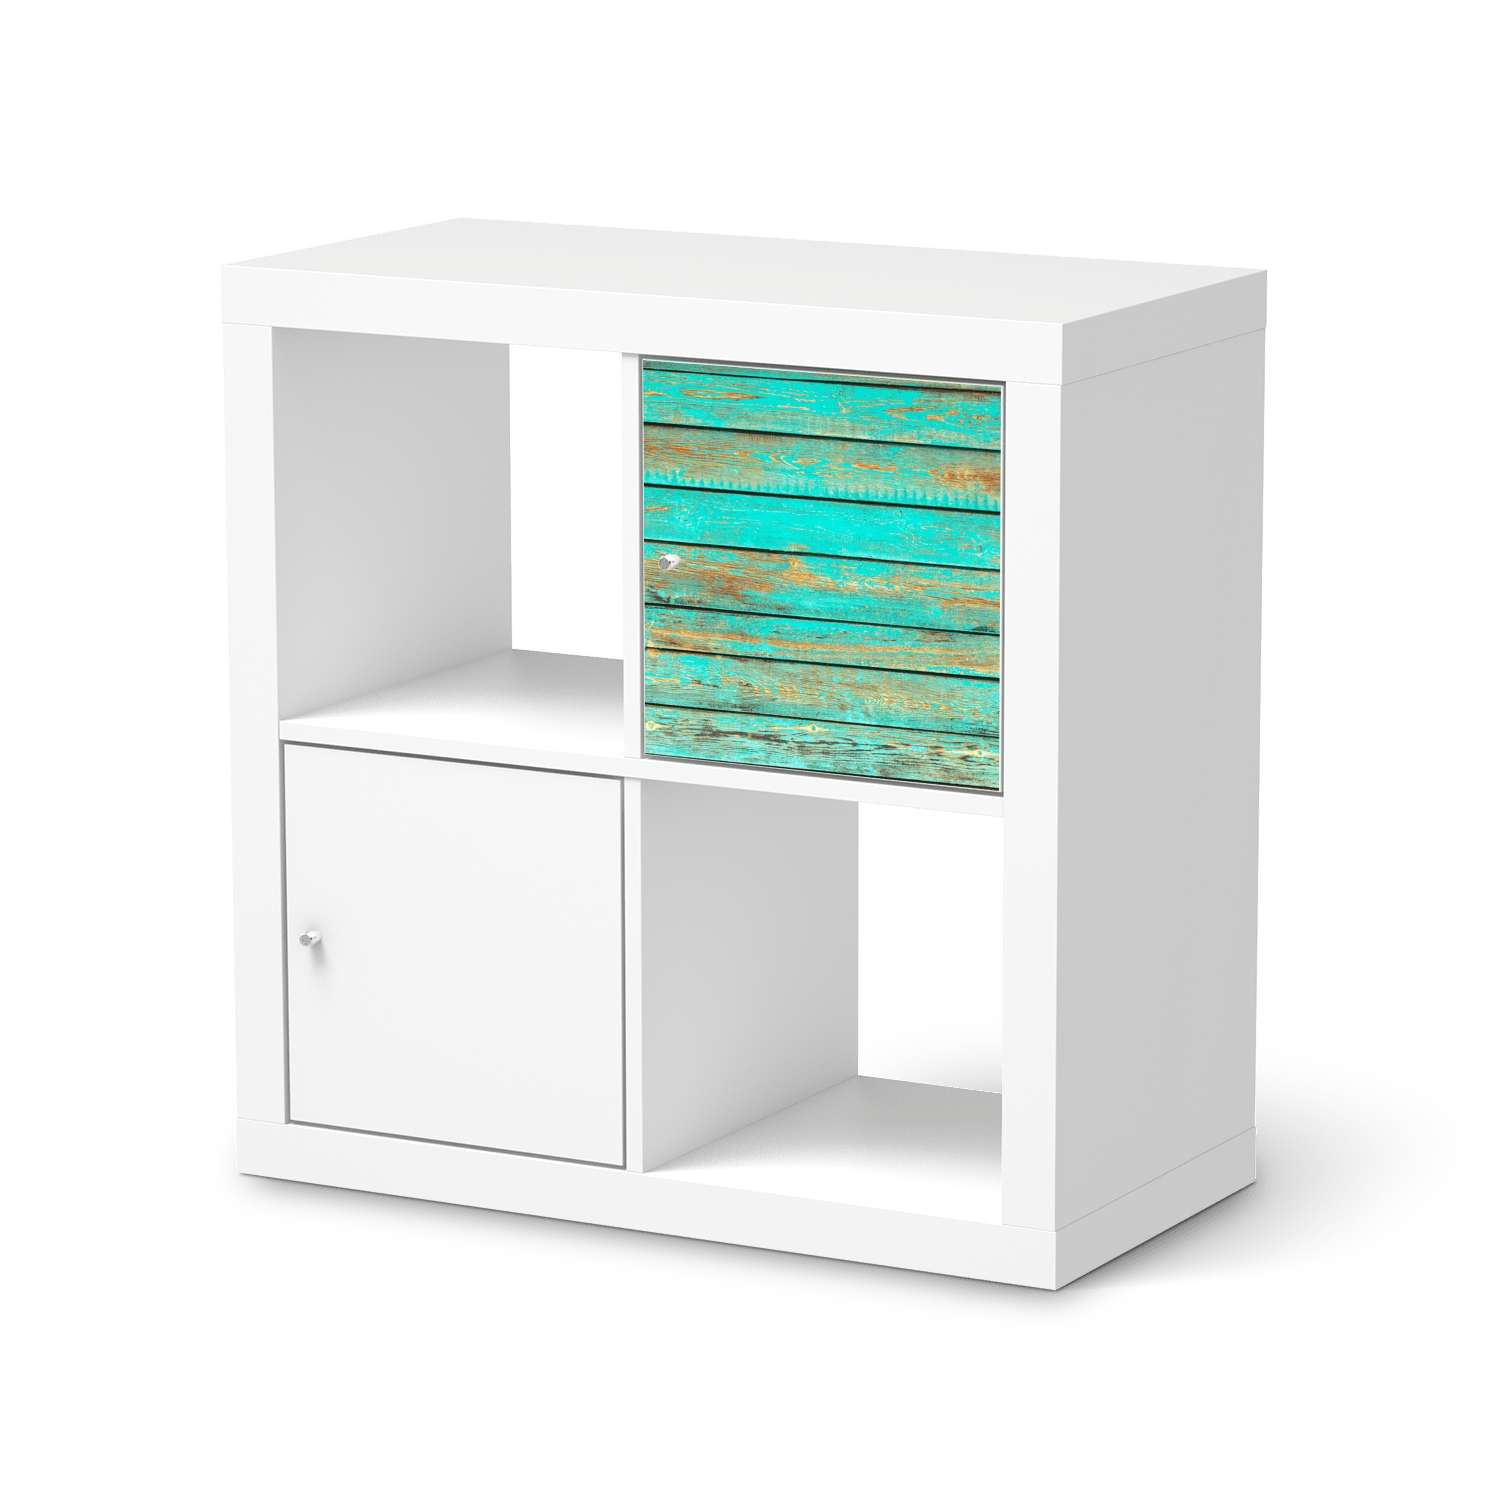 Selbstklebende Folie IKEA Kallax Regal 1 T?re - Design: Wooden Aqua von creatisto